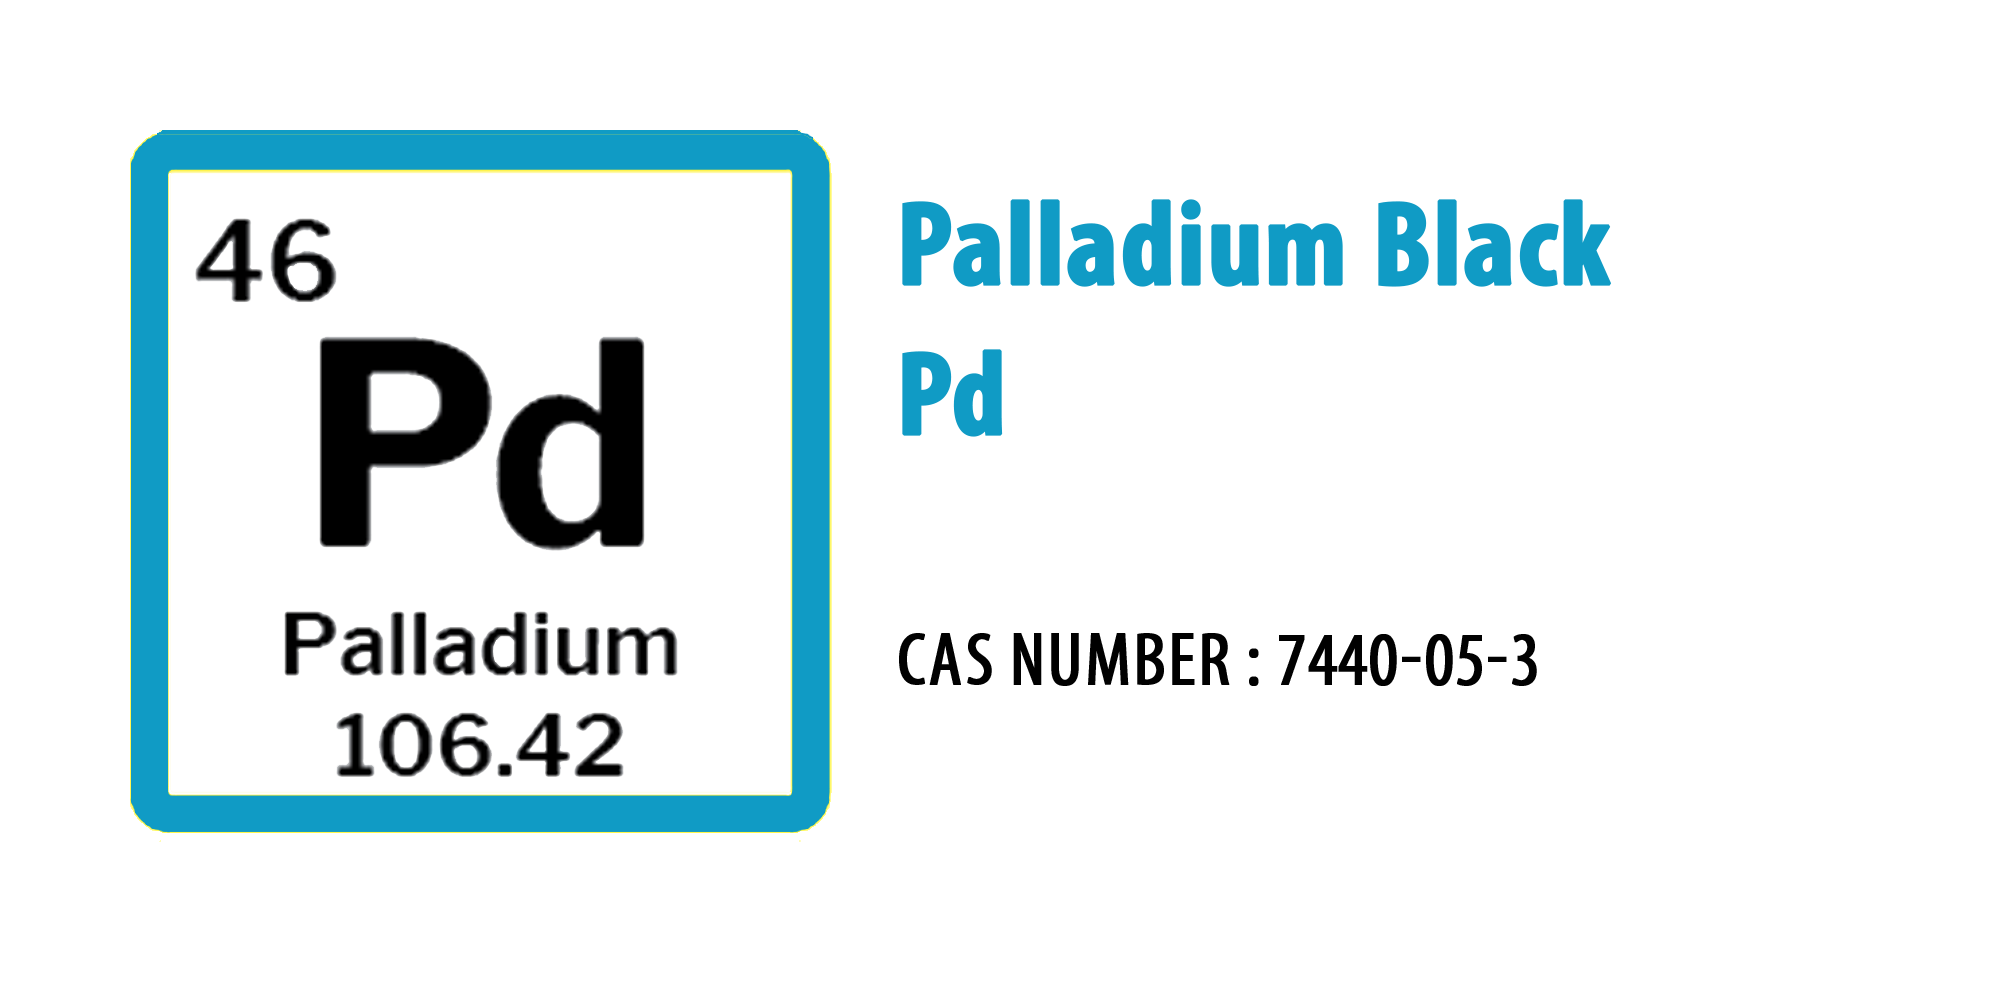 Palladium black